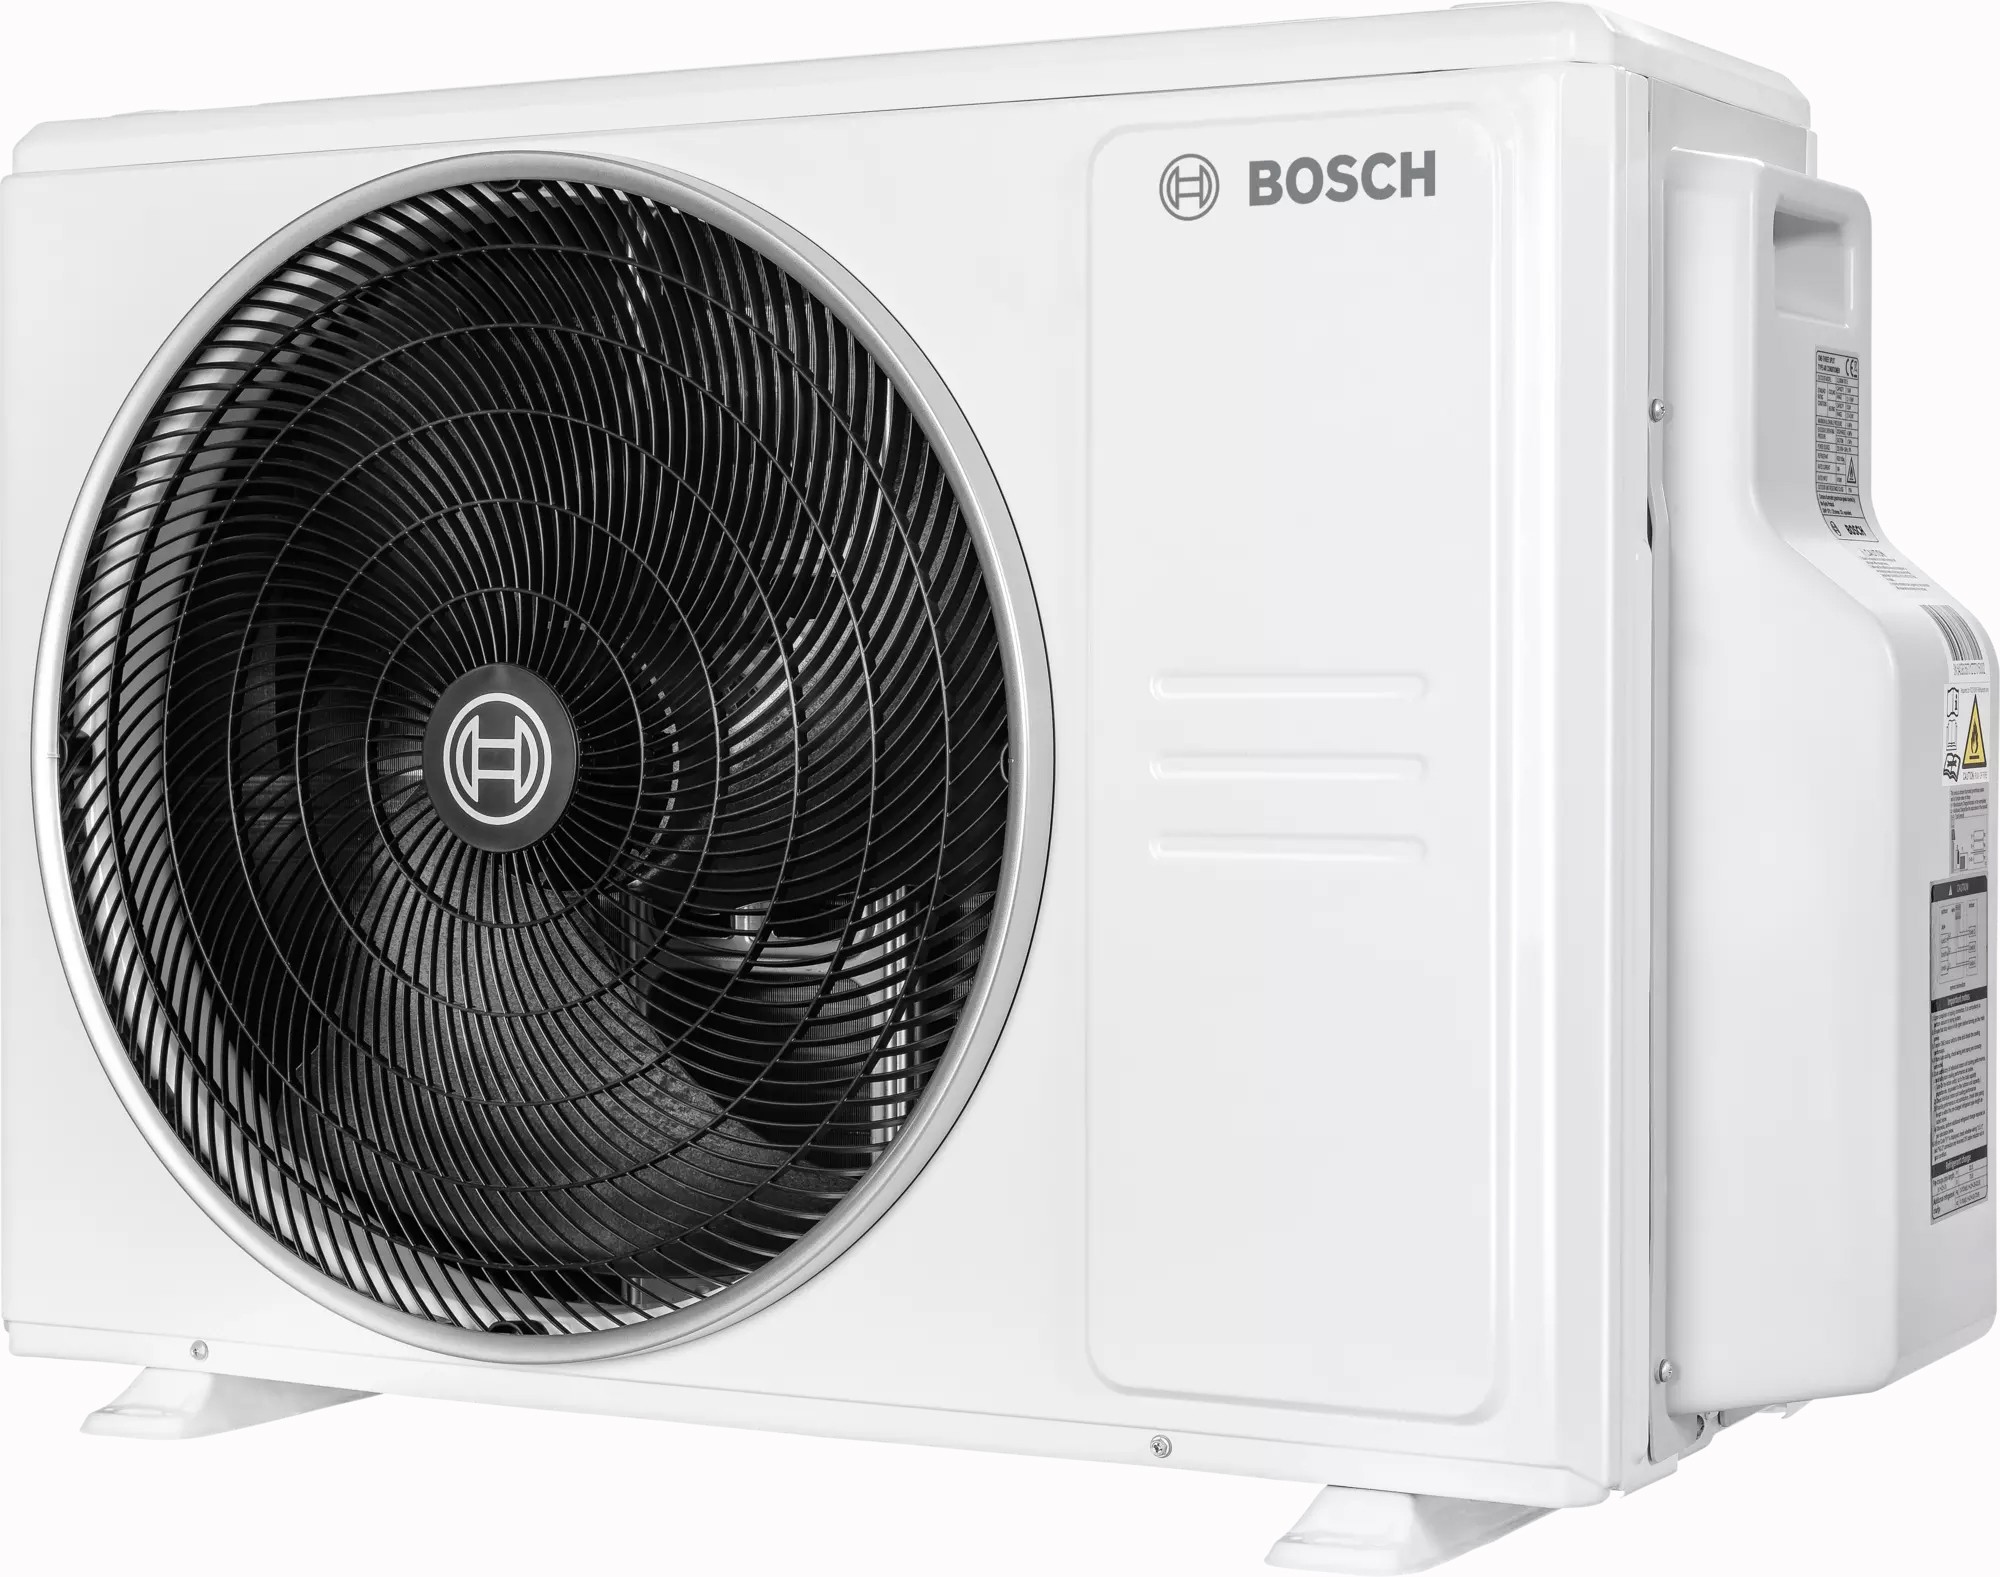 в продаже Наружный блок мультисплит-системы Bosch CL5000M 79/3 E, 7,9 кВт - фото 3